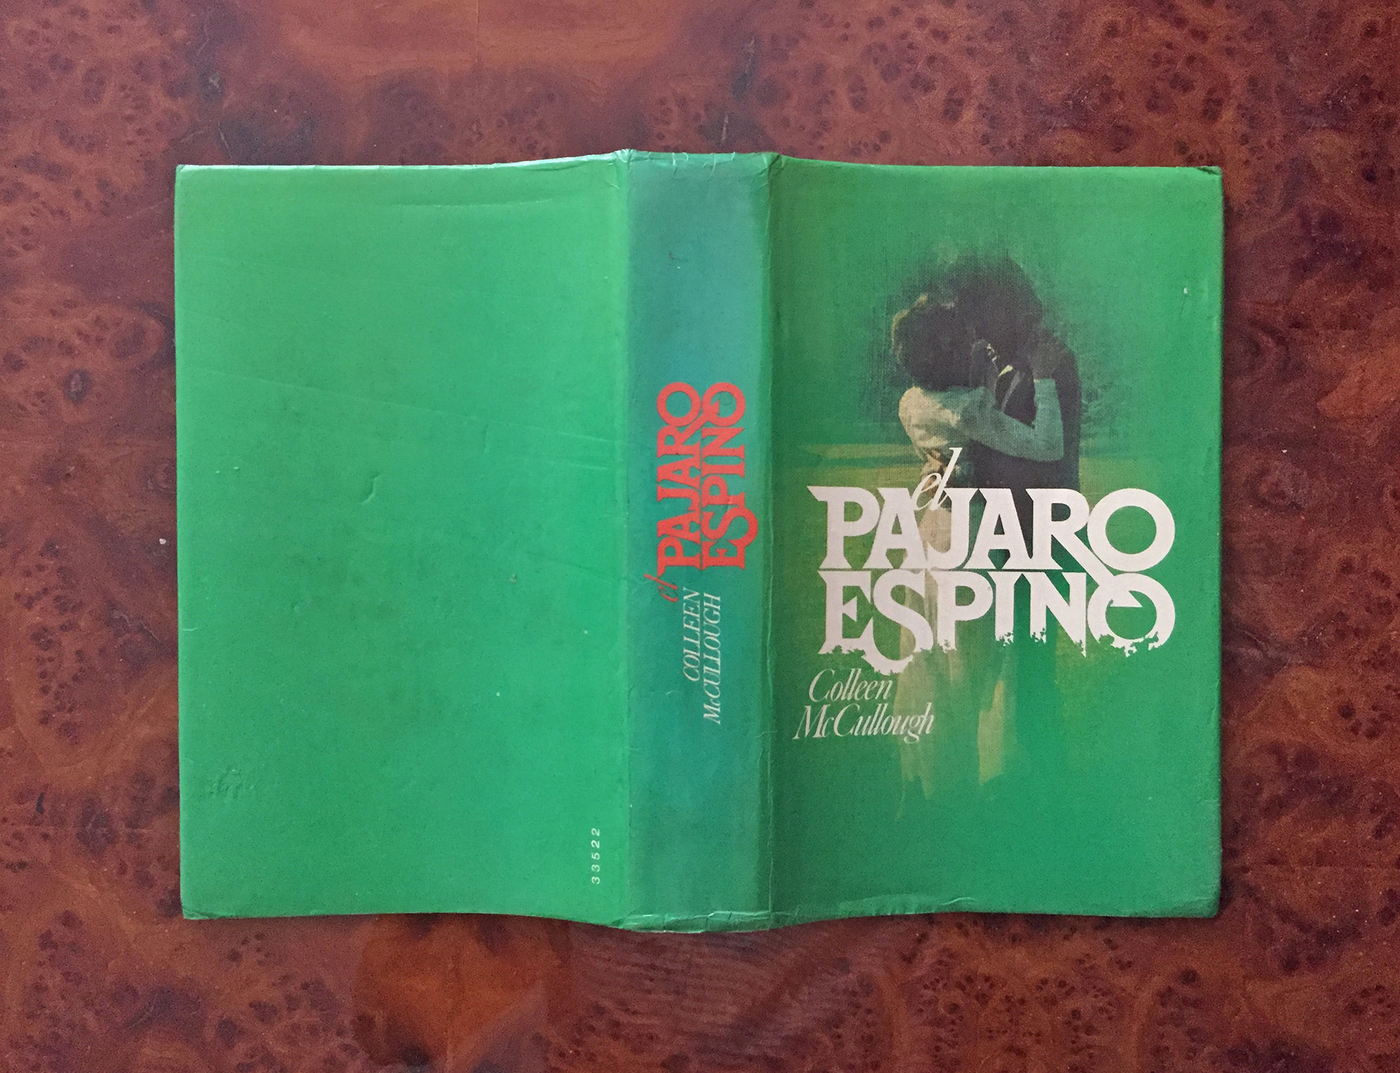 El Pajaro Espino book jacket (1977 edition) - Fonts In Use